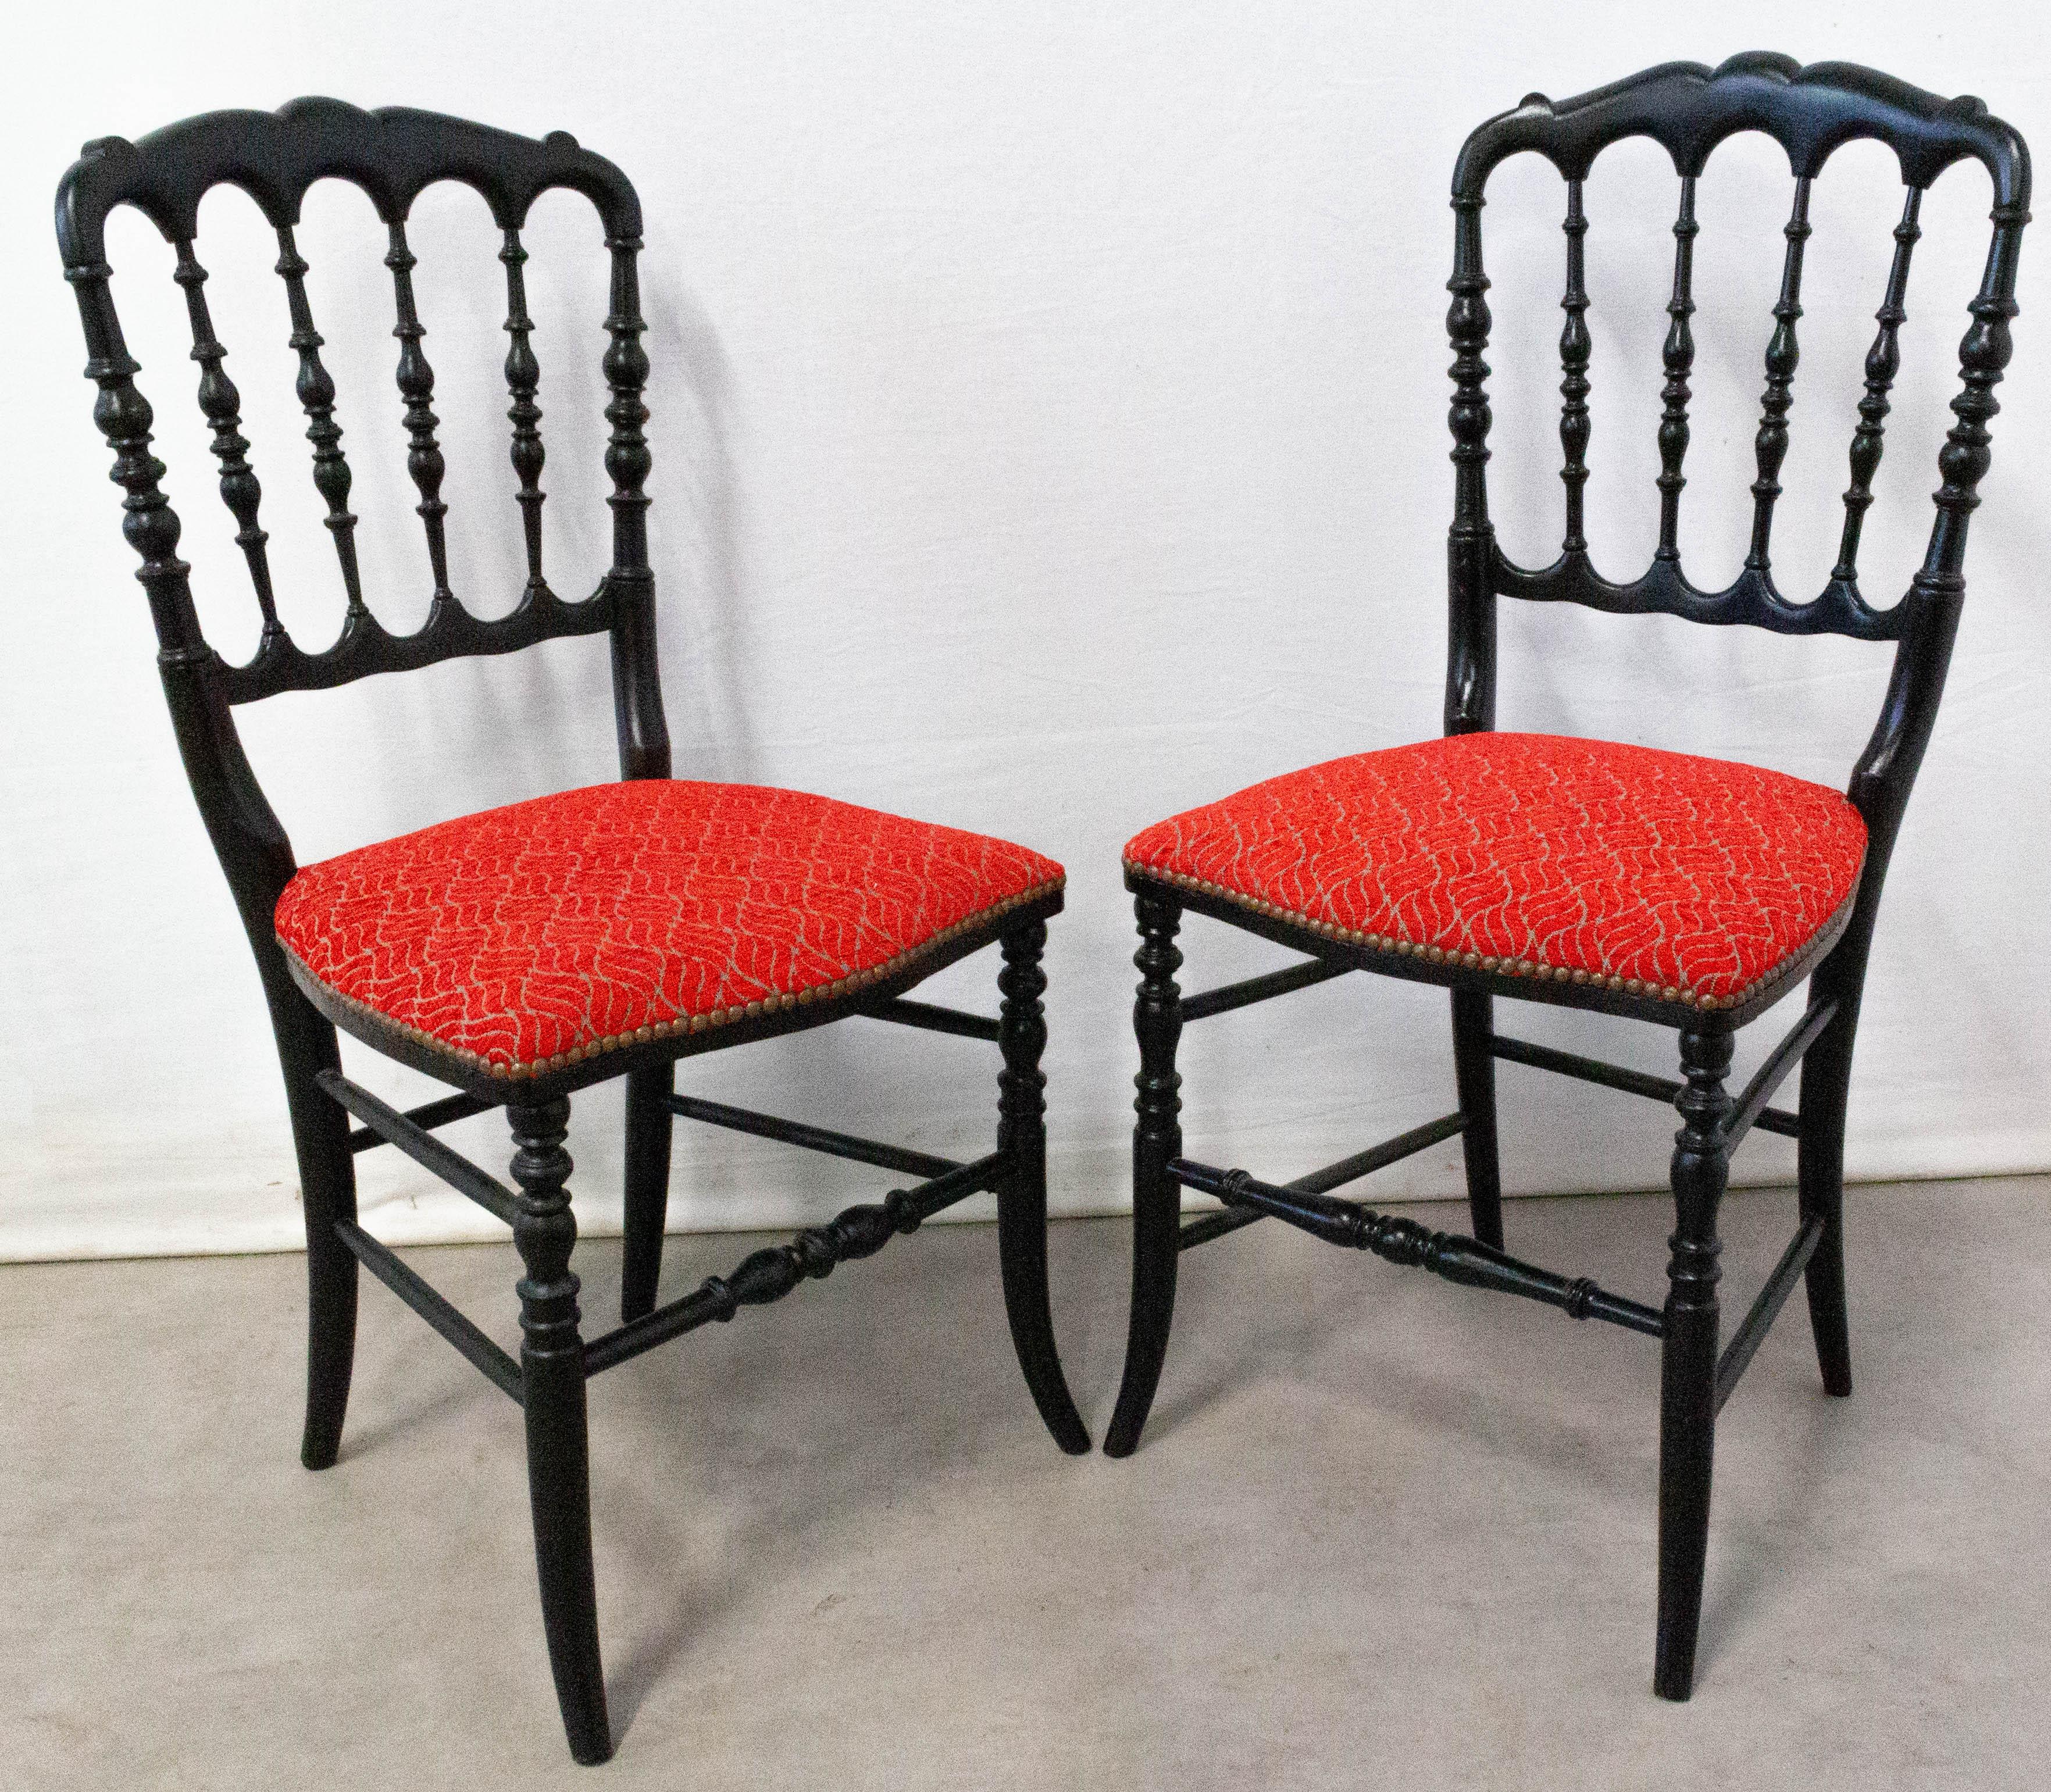 Chaises rouges françaises Napoléon III fin 19ème siècle
Les chaises ont été retapissées.
Les chaises sont similaires, mais l'une est plus grande que l'autre.
Chaise 1 : D 18.1 in ; (46 cm) W 16.5 in. (42 cm) H 34.2 in (87 cm).
Chaise 2 : D 18.1